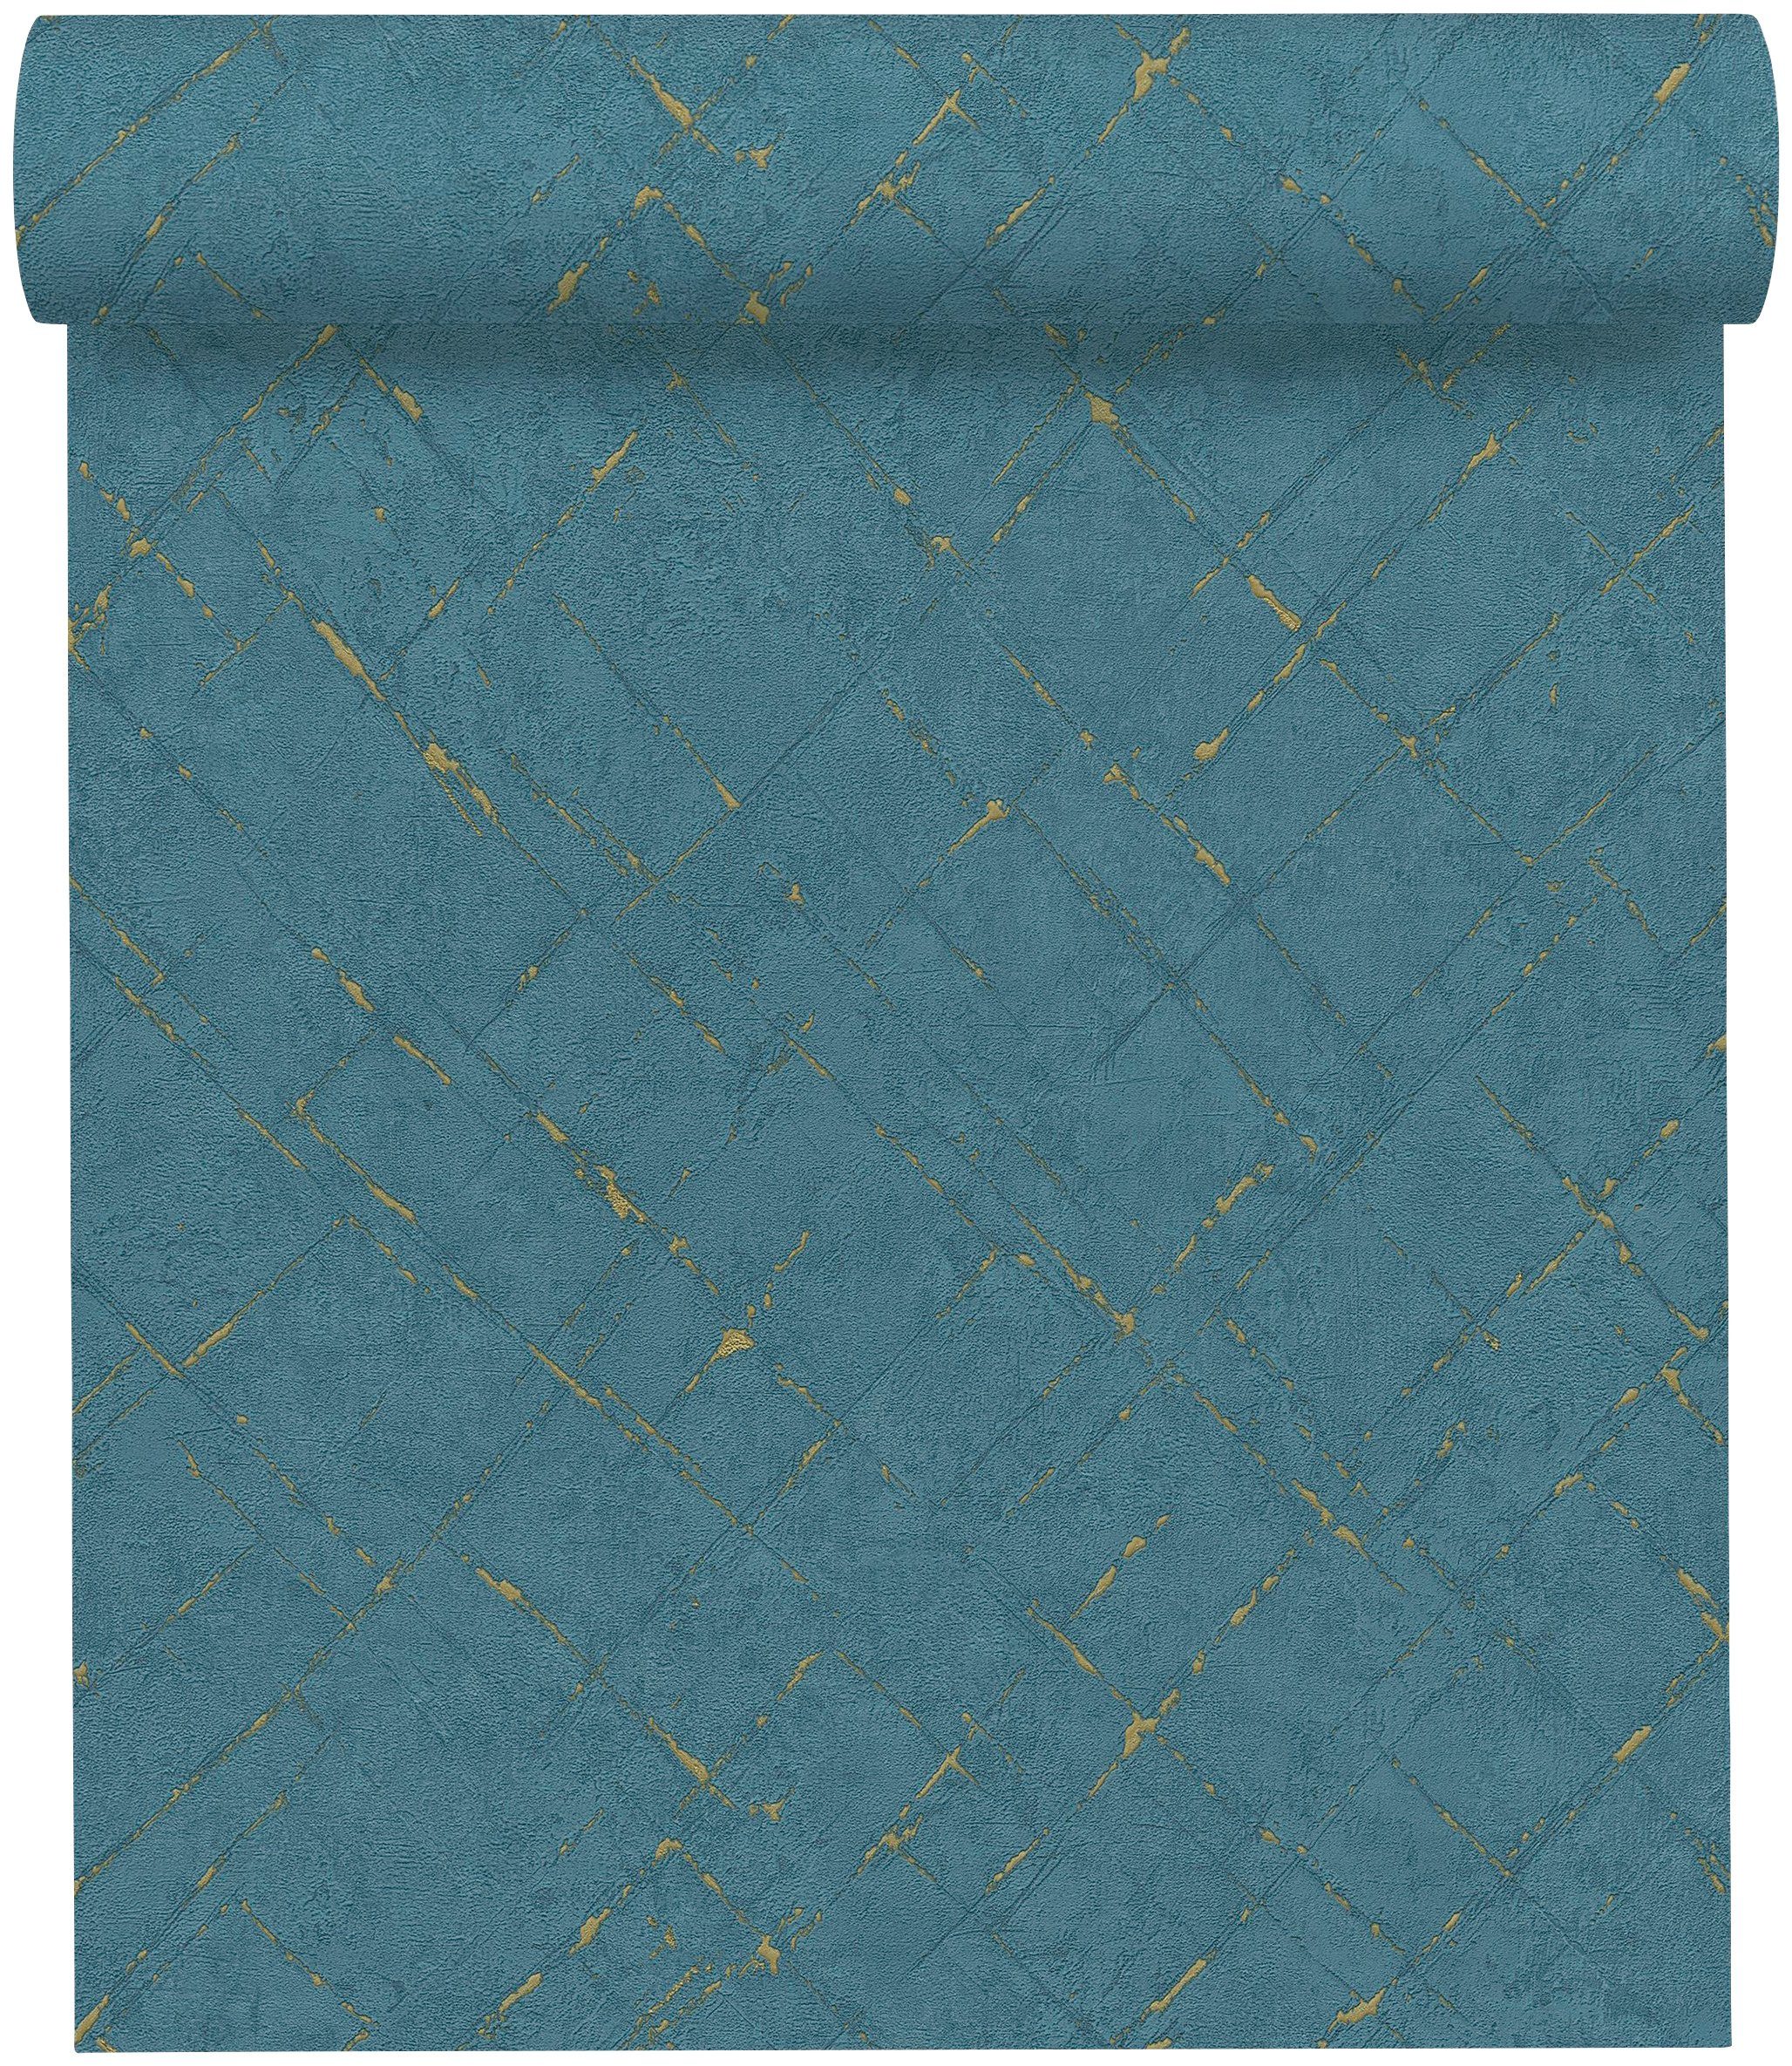 Création Vliestapete blau/gold Steinoptik Grafisch Farbeinsatz, unifarben strukturiert, mit Emotion Graphic, Tapete A.S.